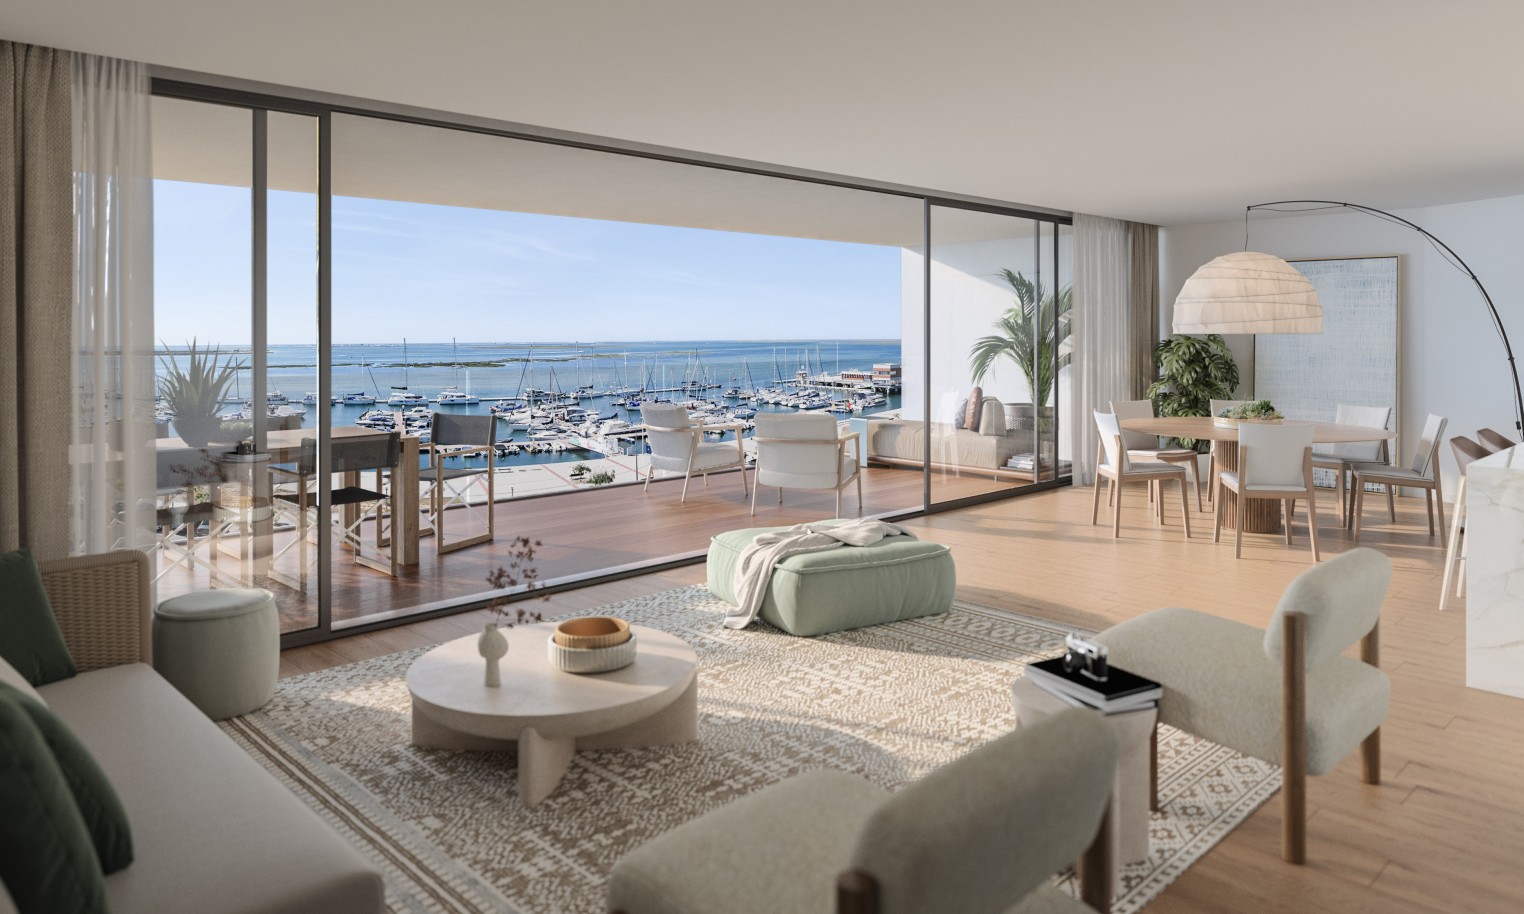 Pisos nuevos con vistas al mar, 1, 2 y 3 dormitorios, en venta en Olhão, Algarve_244496